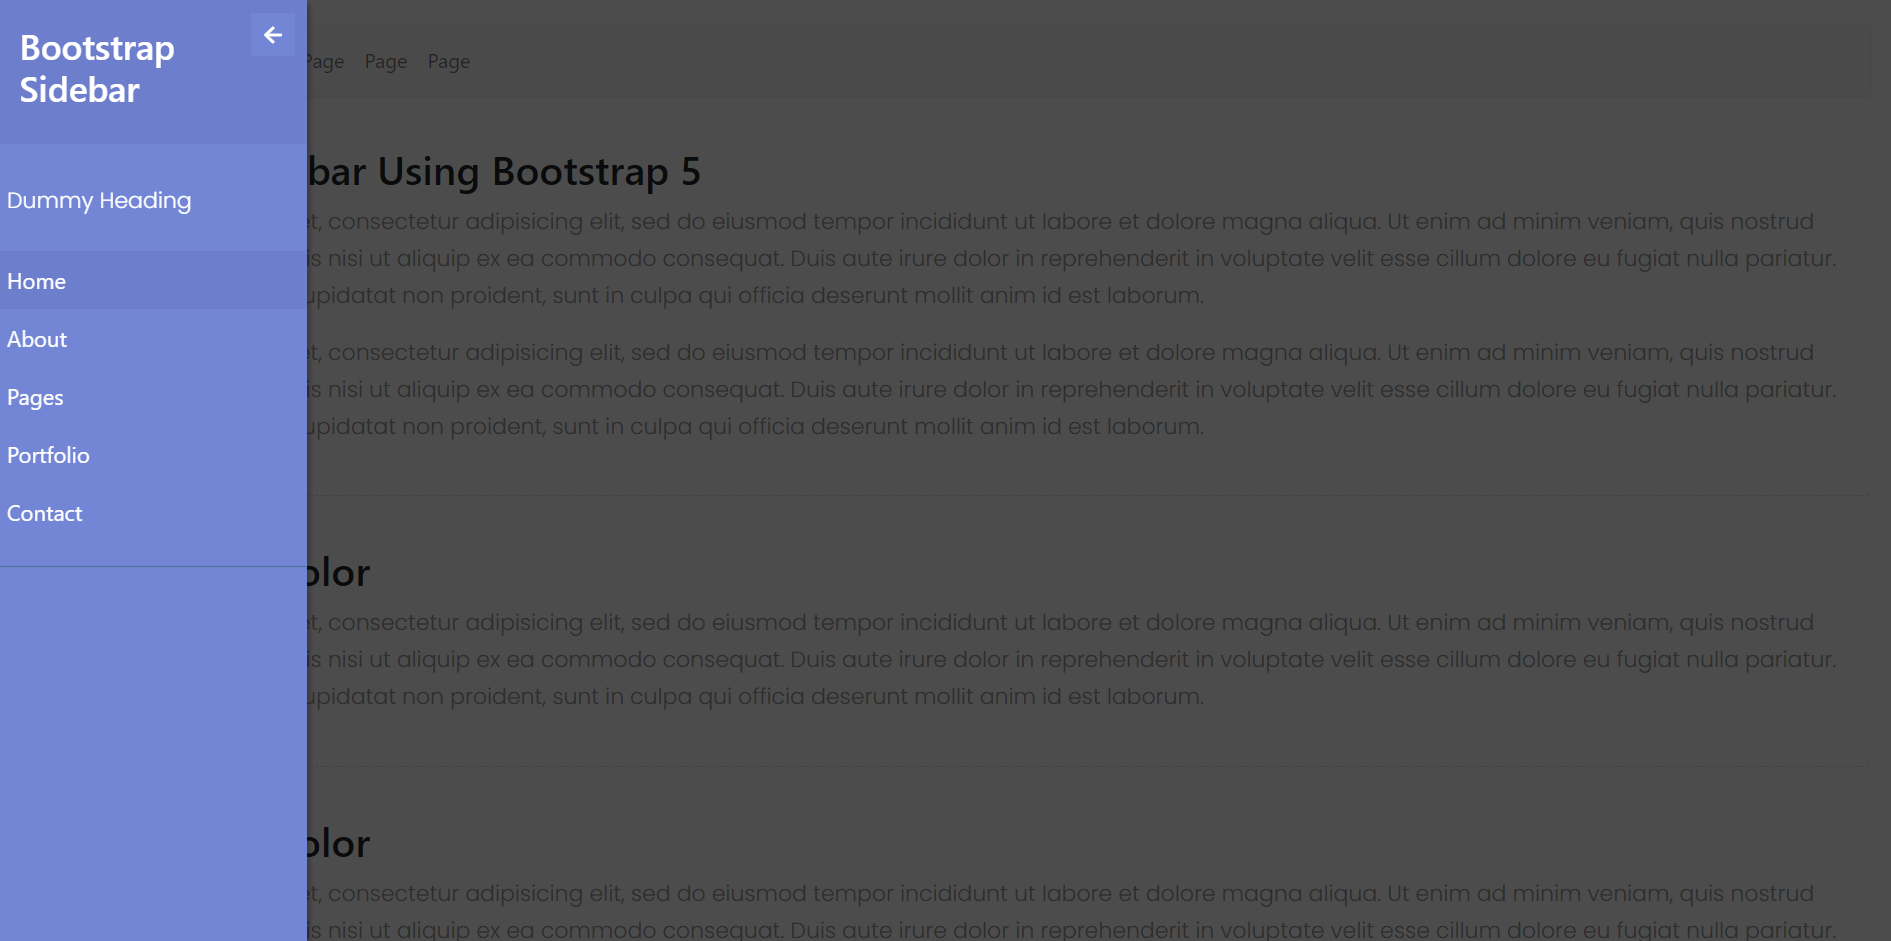 Vue 3 Bootstrap 5 Popup Sidebar Template